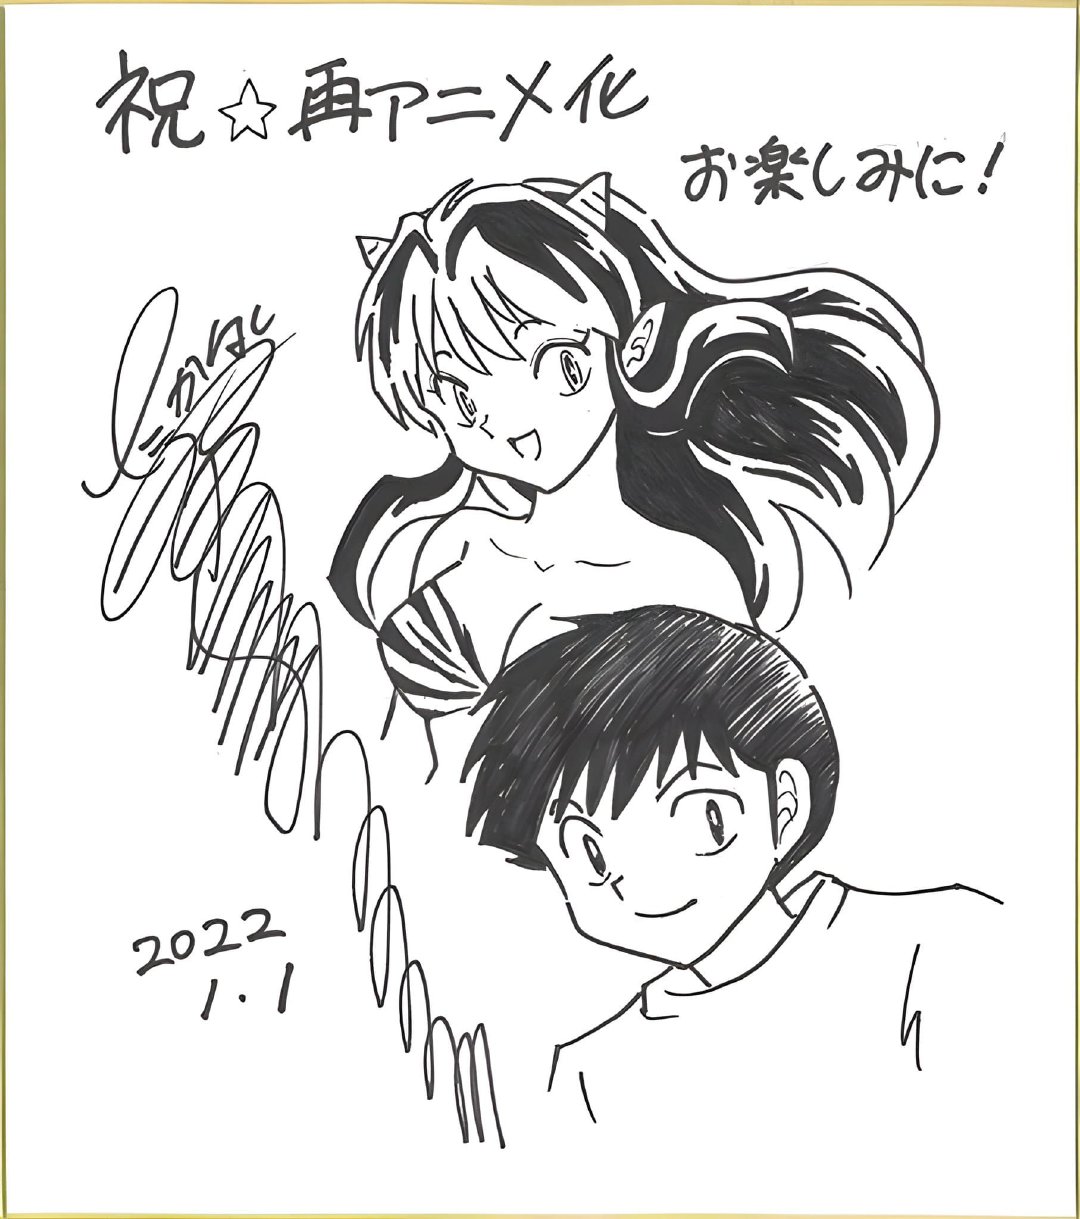 高桥留美子经典长篇漫画《福星小子》再次动画化决定，将于2022年播出。